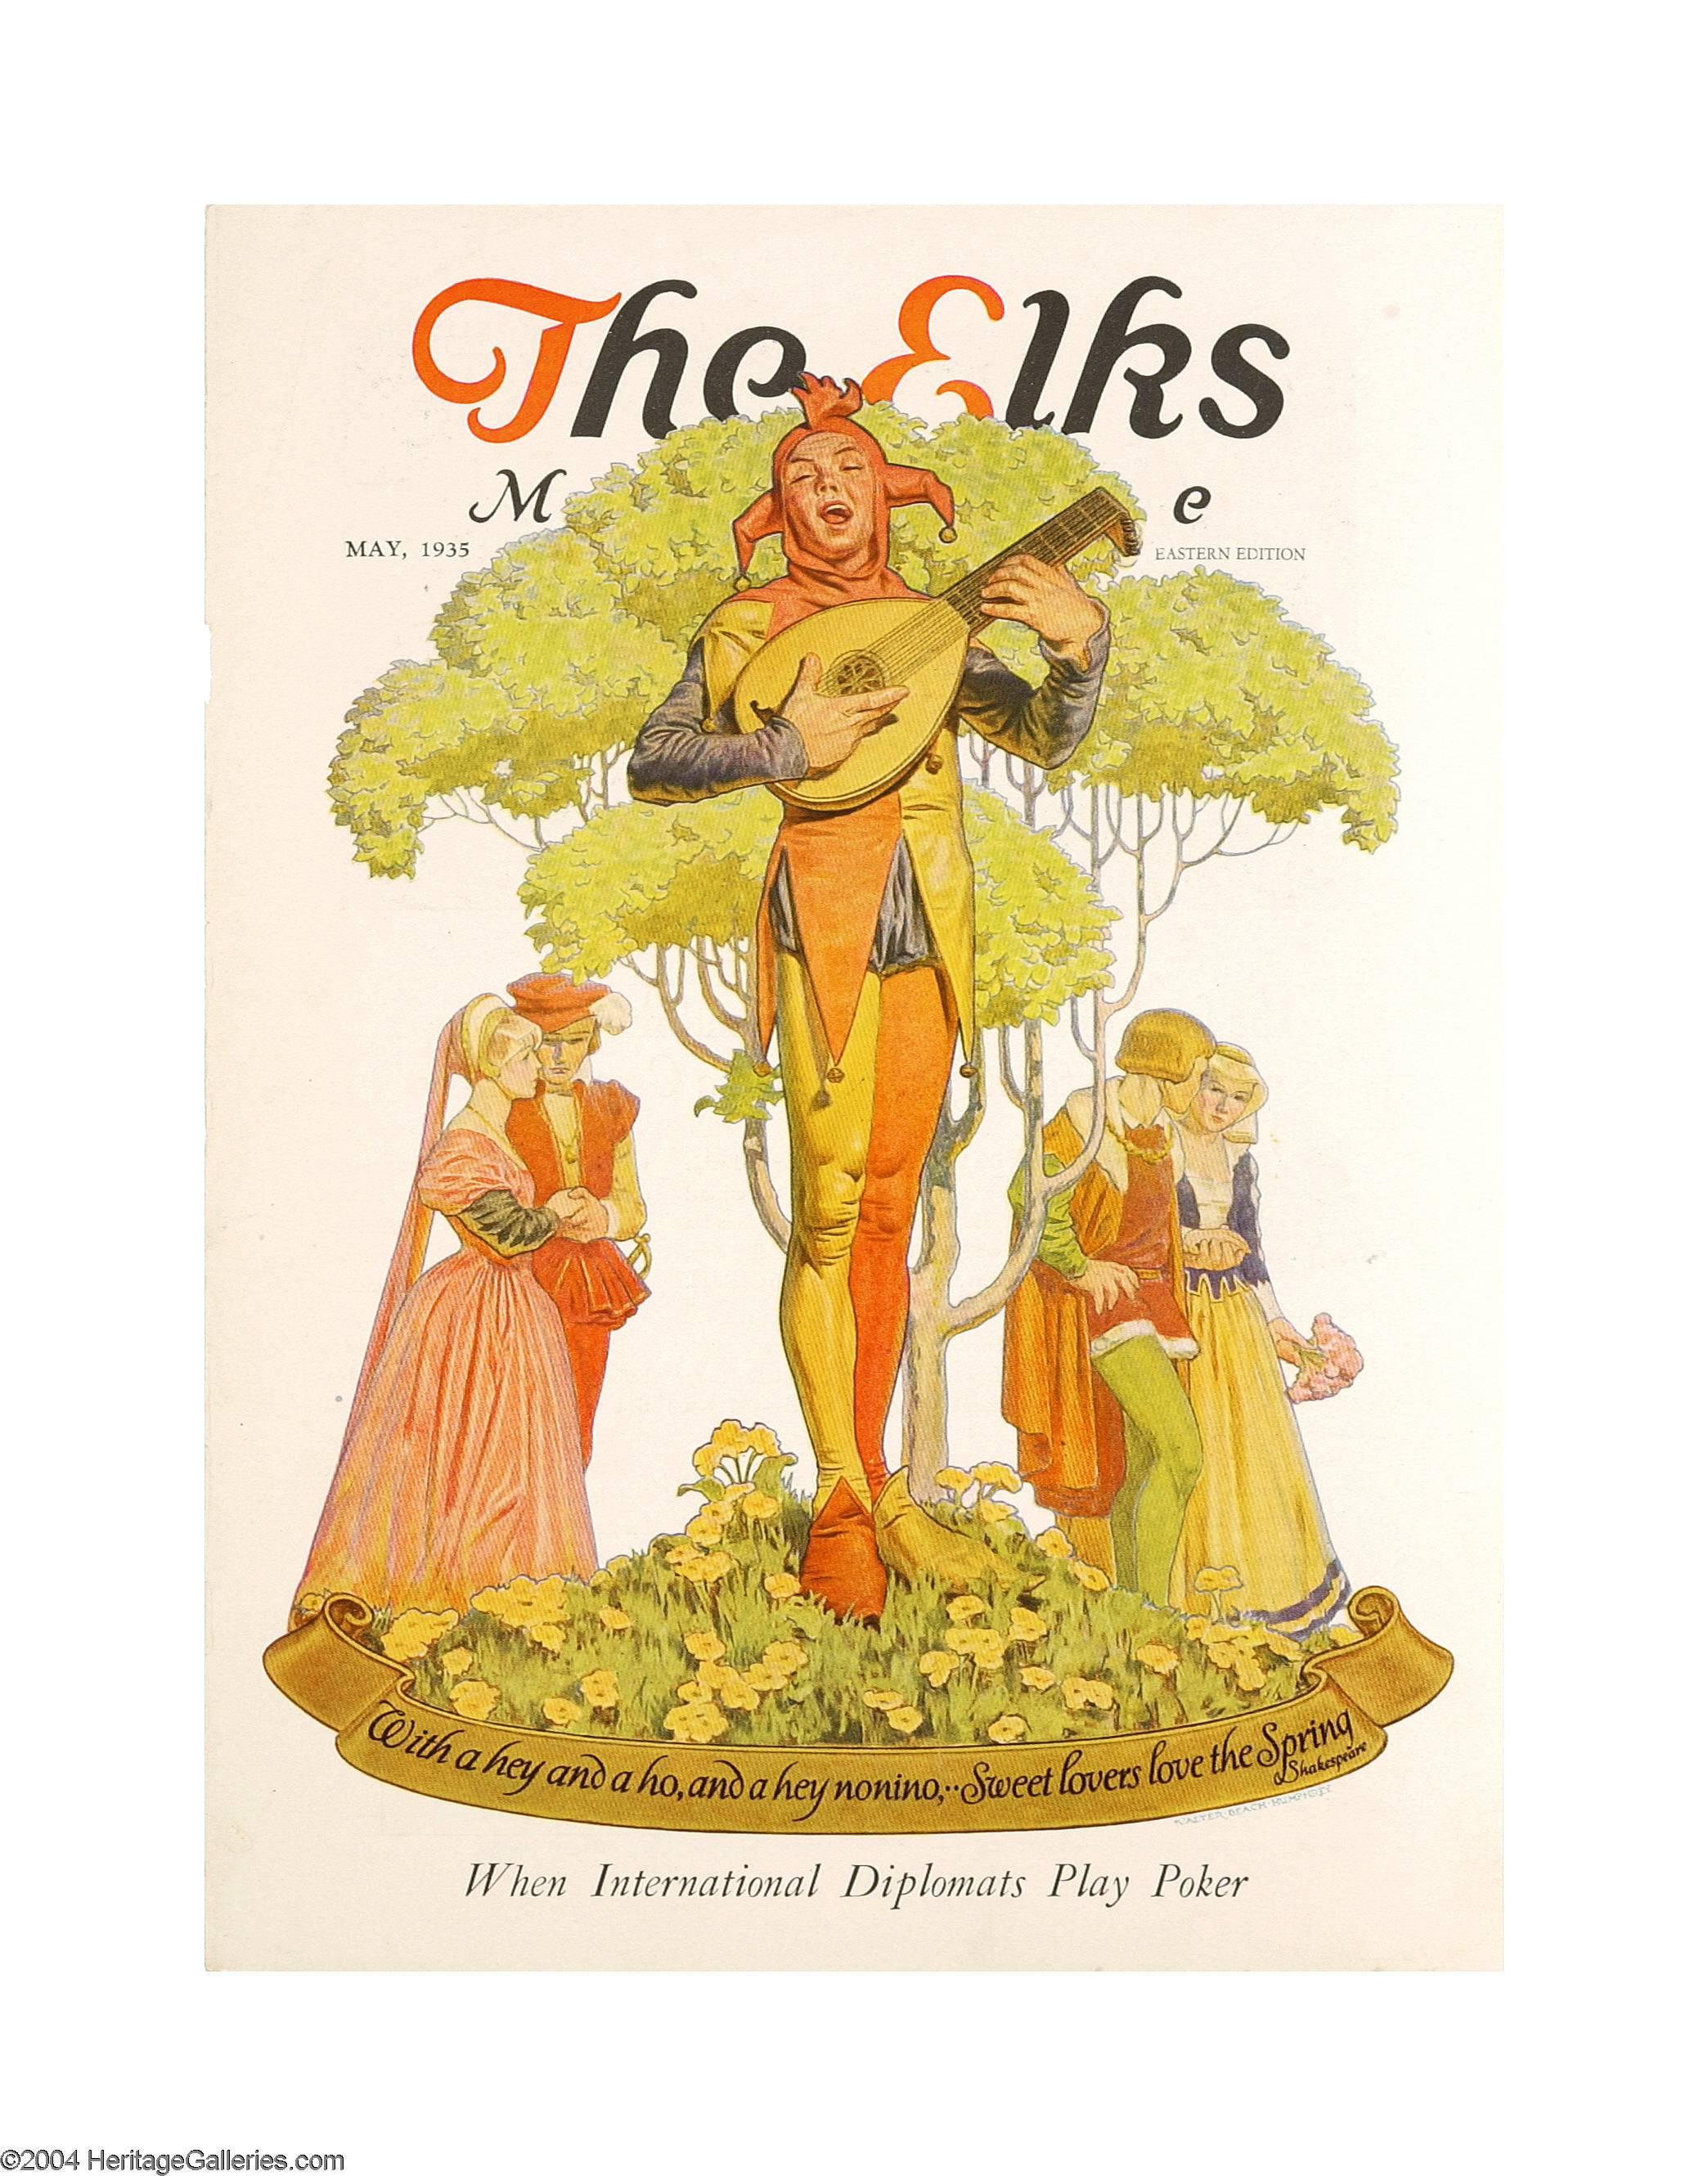 Couverture du magazine The Elks de mai 1935

Légende : 